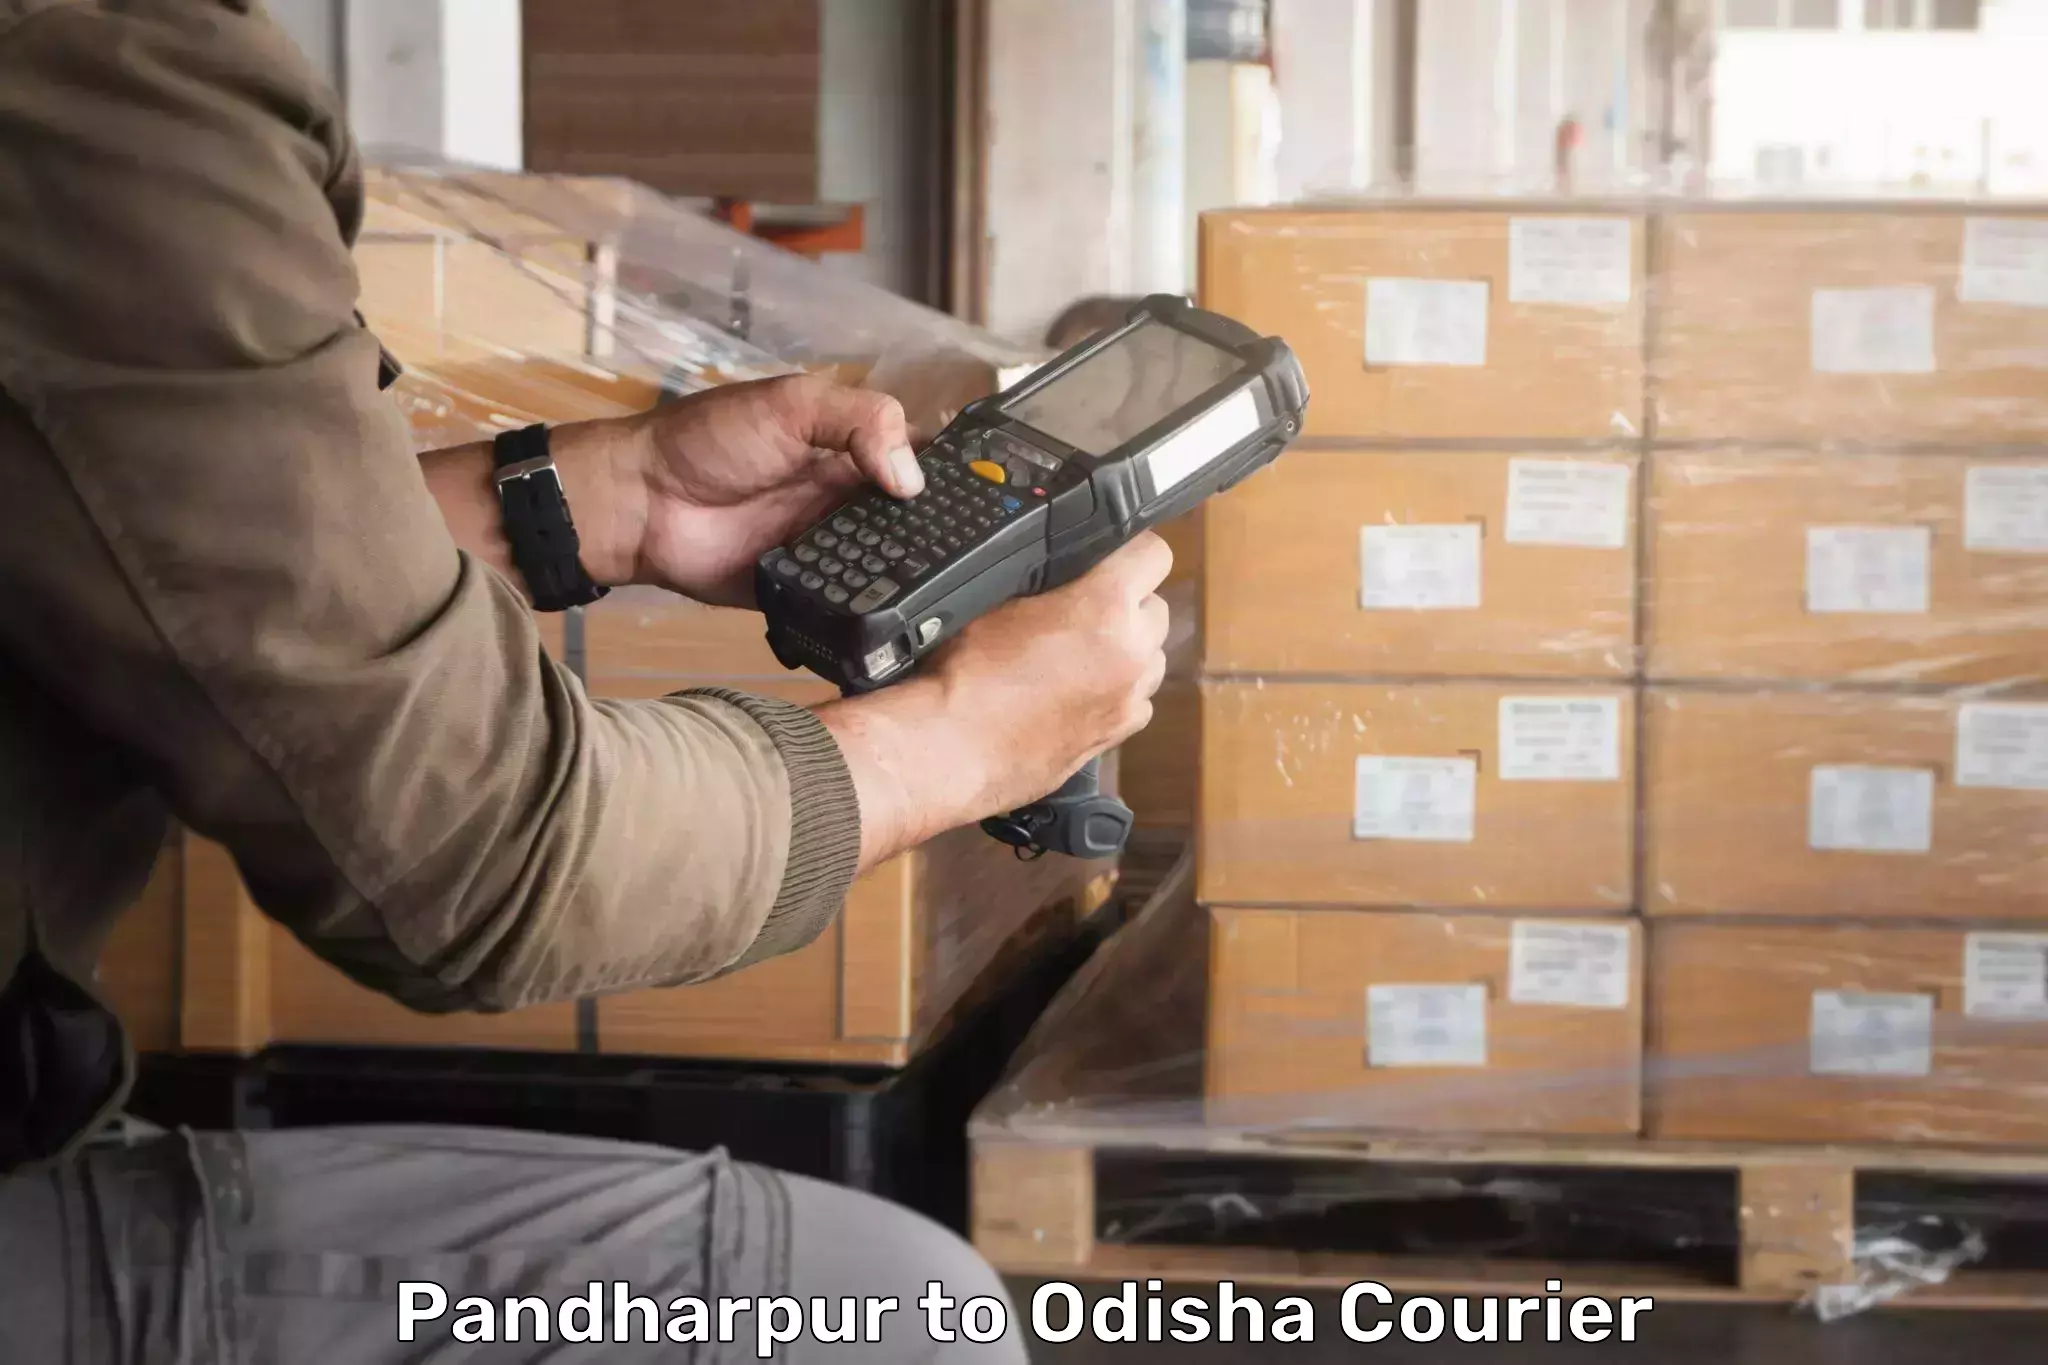 Tech-enabled shipping Pandharpur to Balipokhari